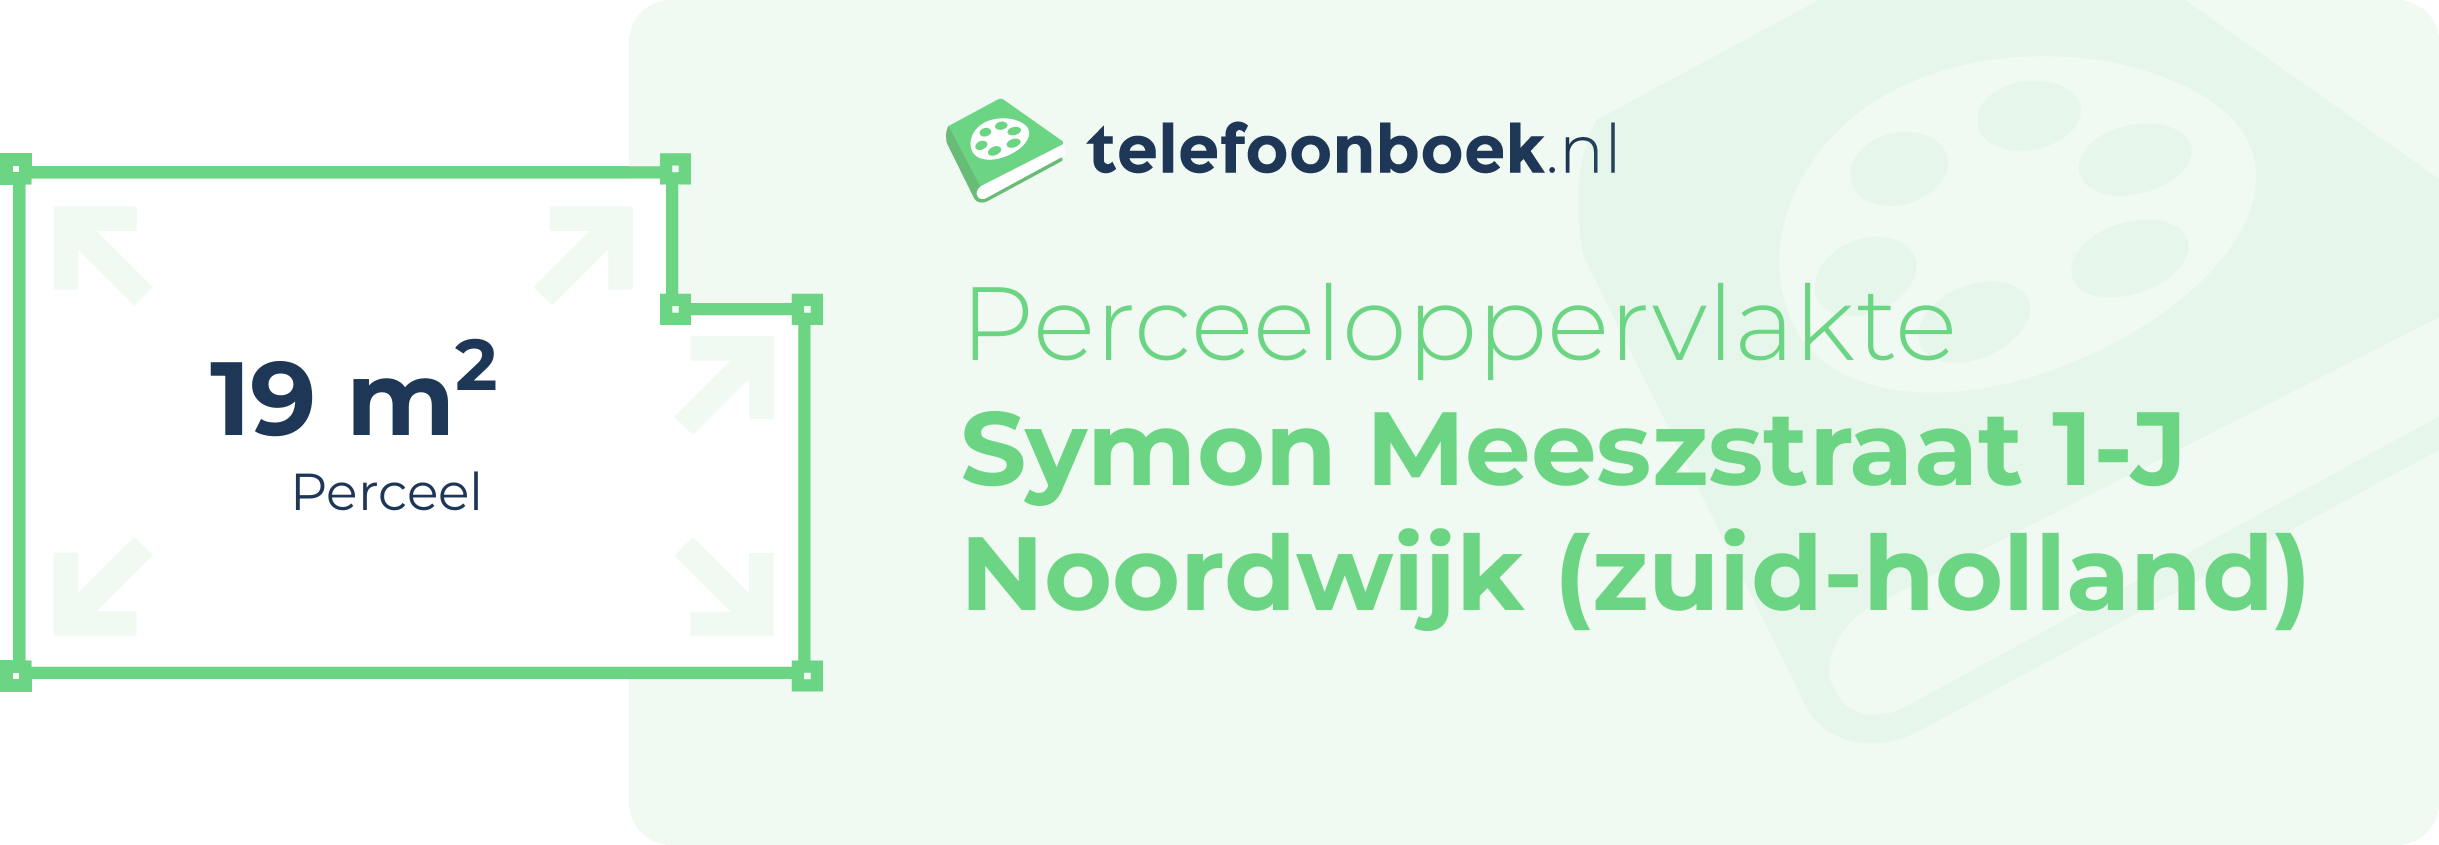 Perceeloppervlakte Symon Meeszstraat 1-J Noordwijk (Zuid-Holland)